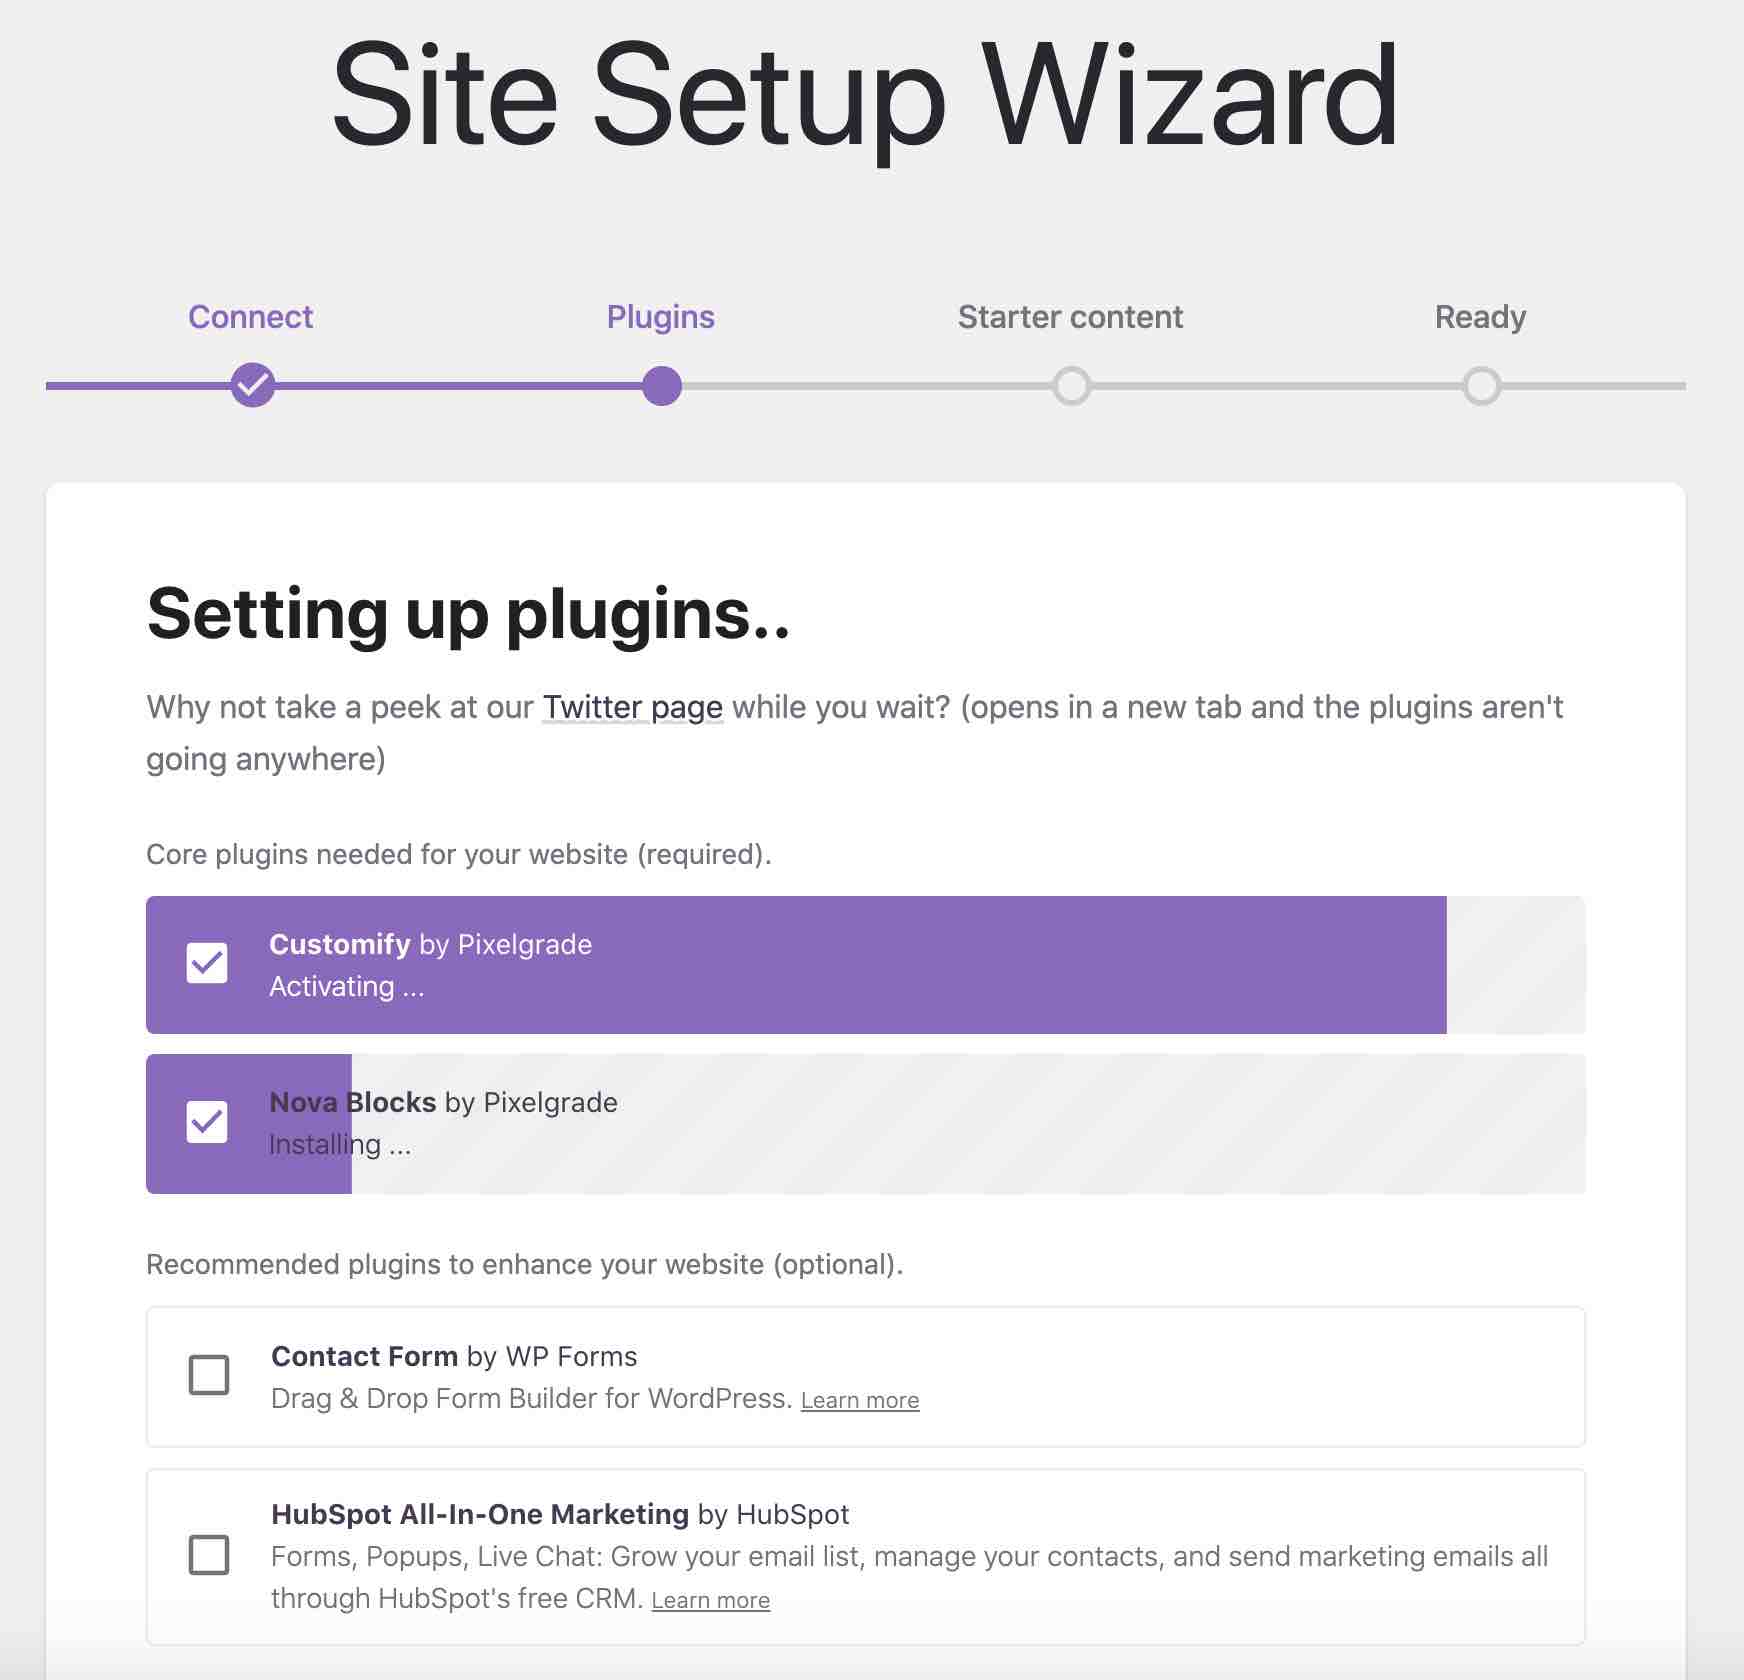 Site Setup Wizard